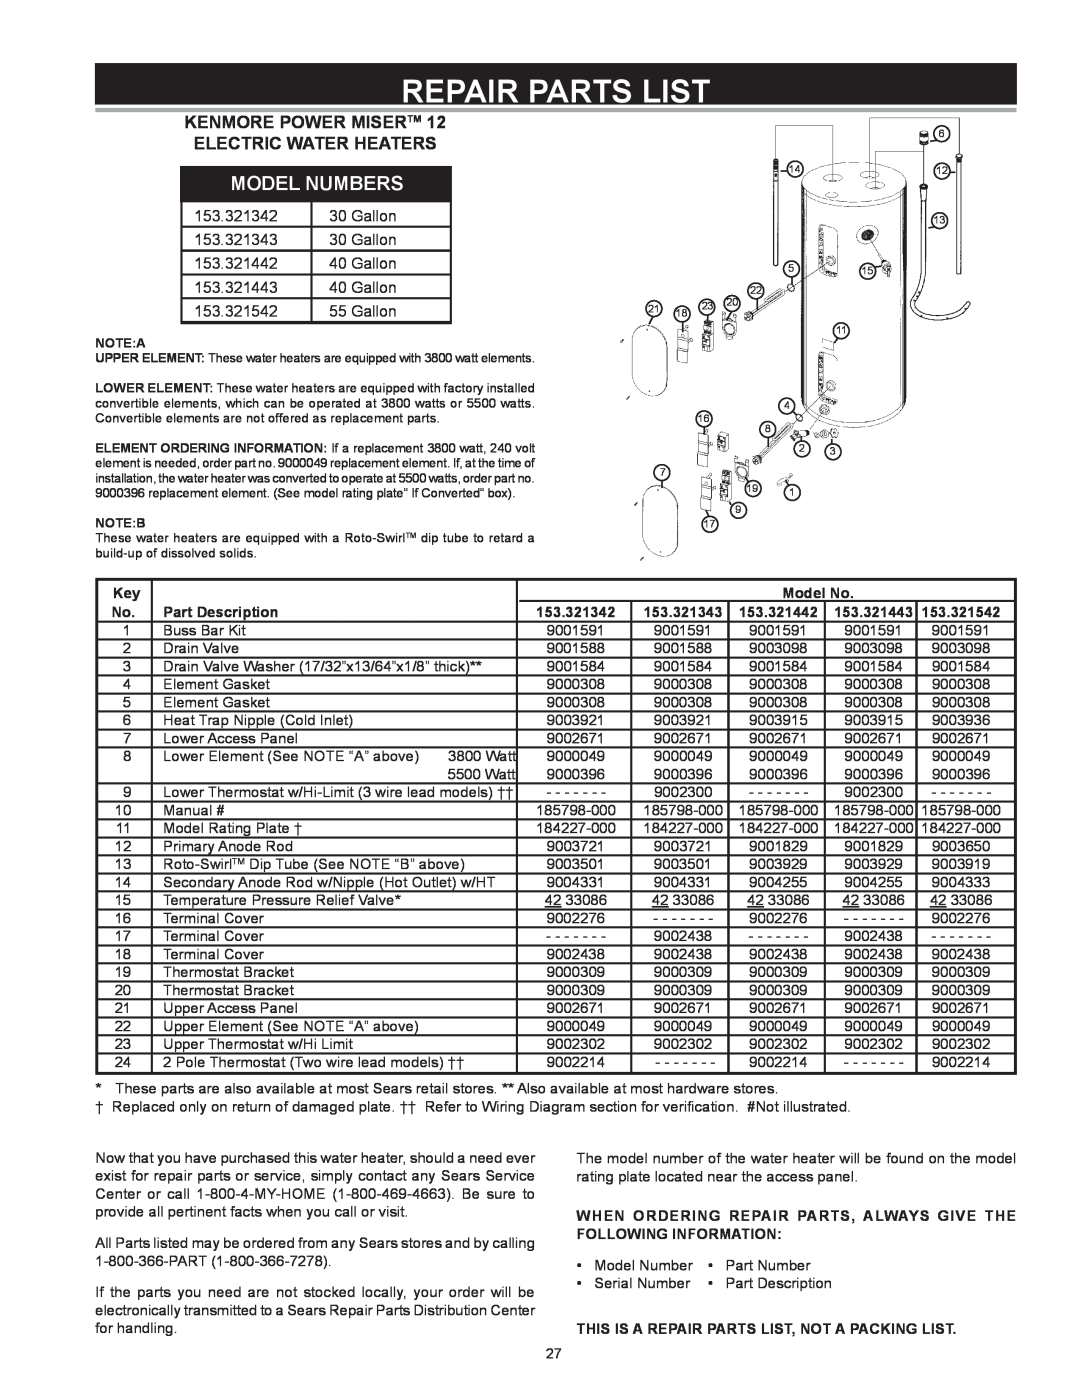 Kenmore 153 owner manual Repair Parts List, Model Numbers, KENMORE POWER MISERTM 12 ELECTRIC WATER HEATERS 